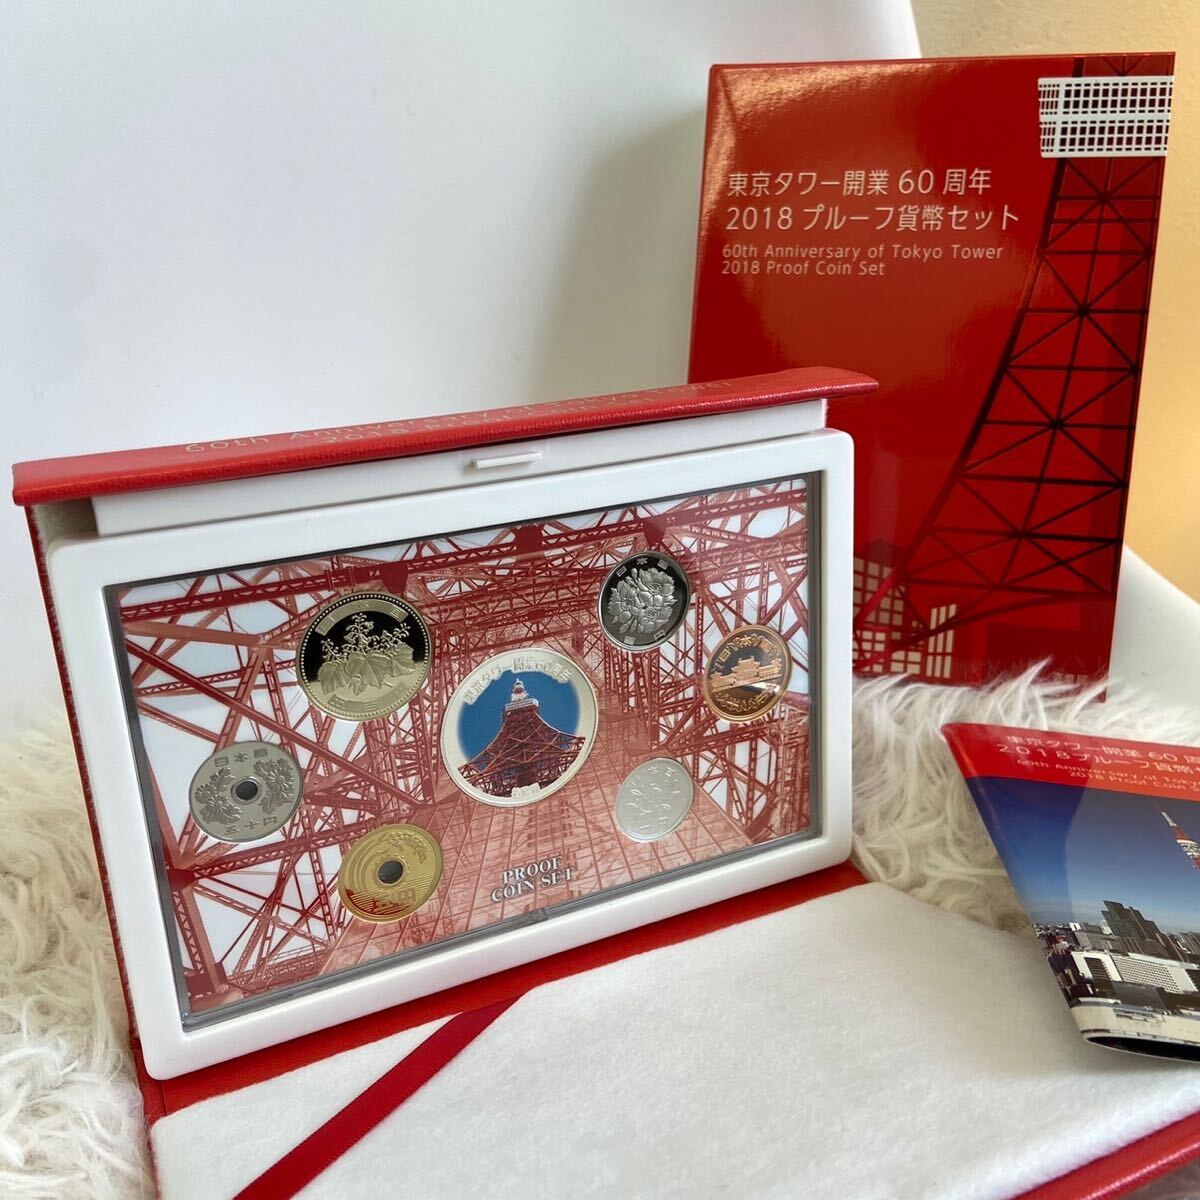 東京タワー開業60周年 2018年 平成30年 プルーフ貨幣セット 記念硬貨 銀製メダル925位銀 約20g 硬貨未使用の画像1